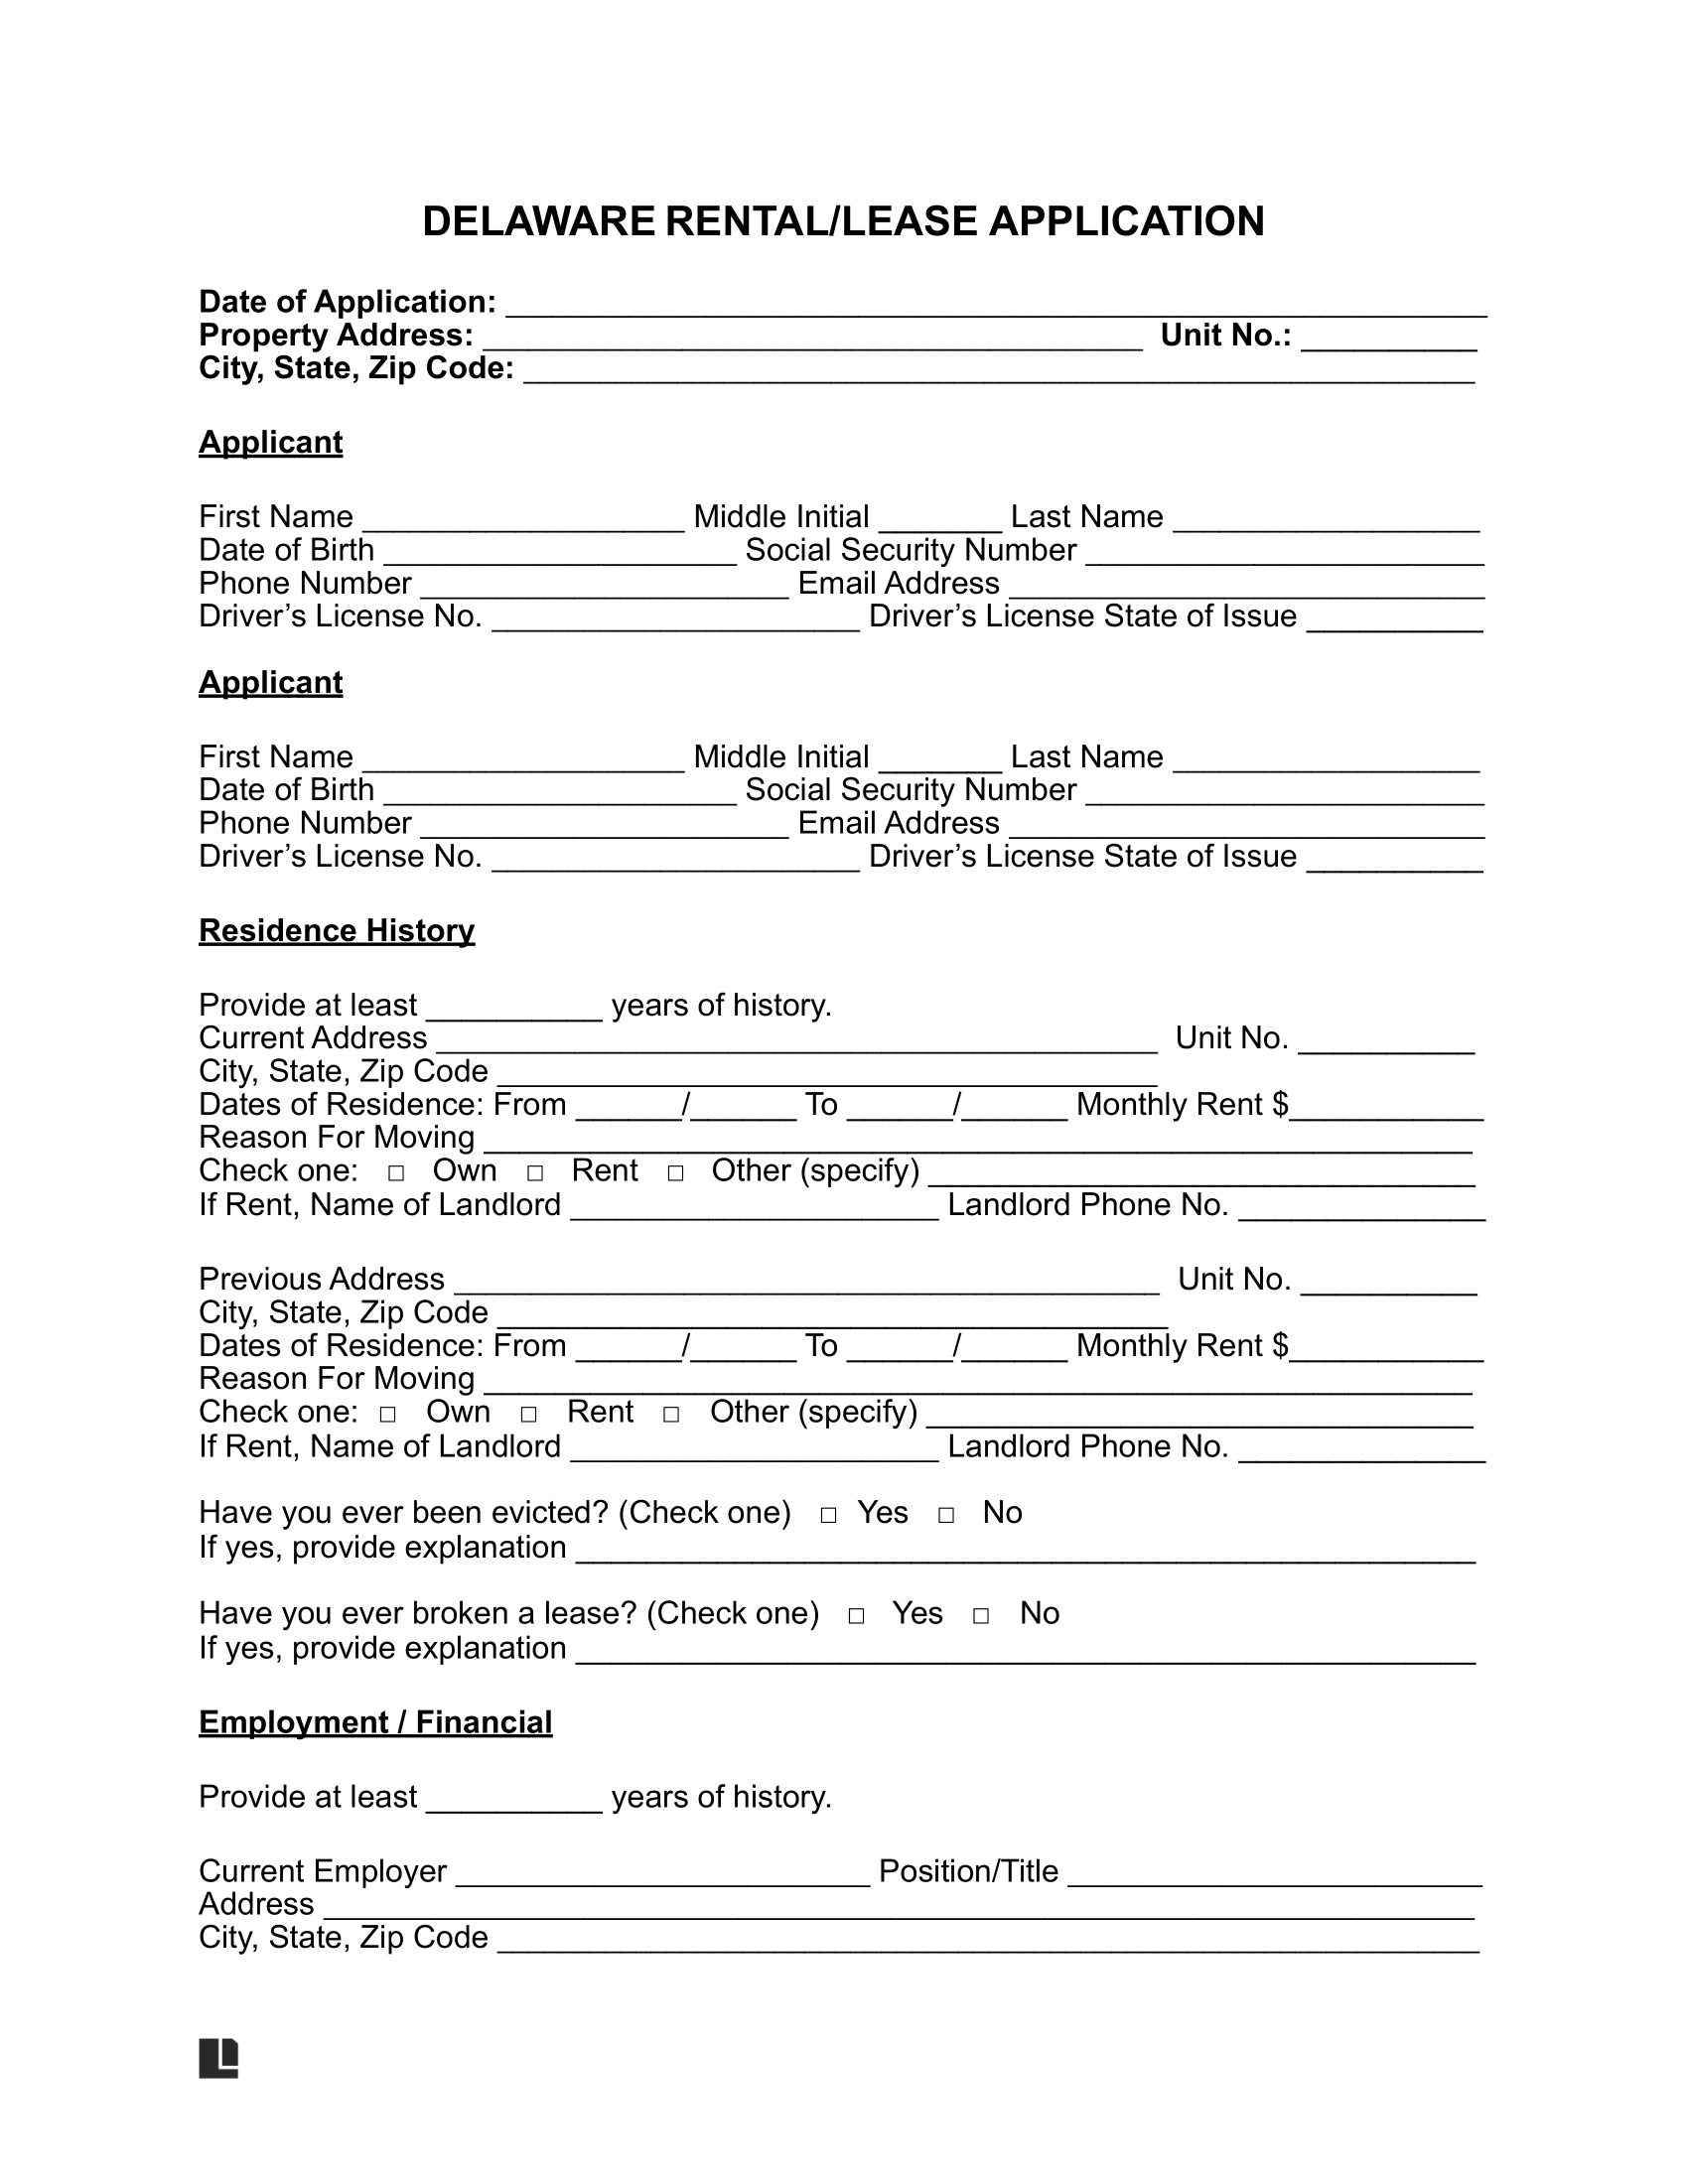 Delaware Rental Application Form